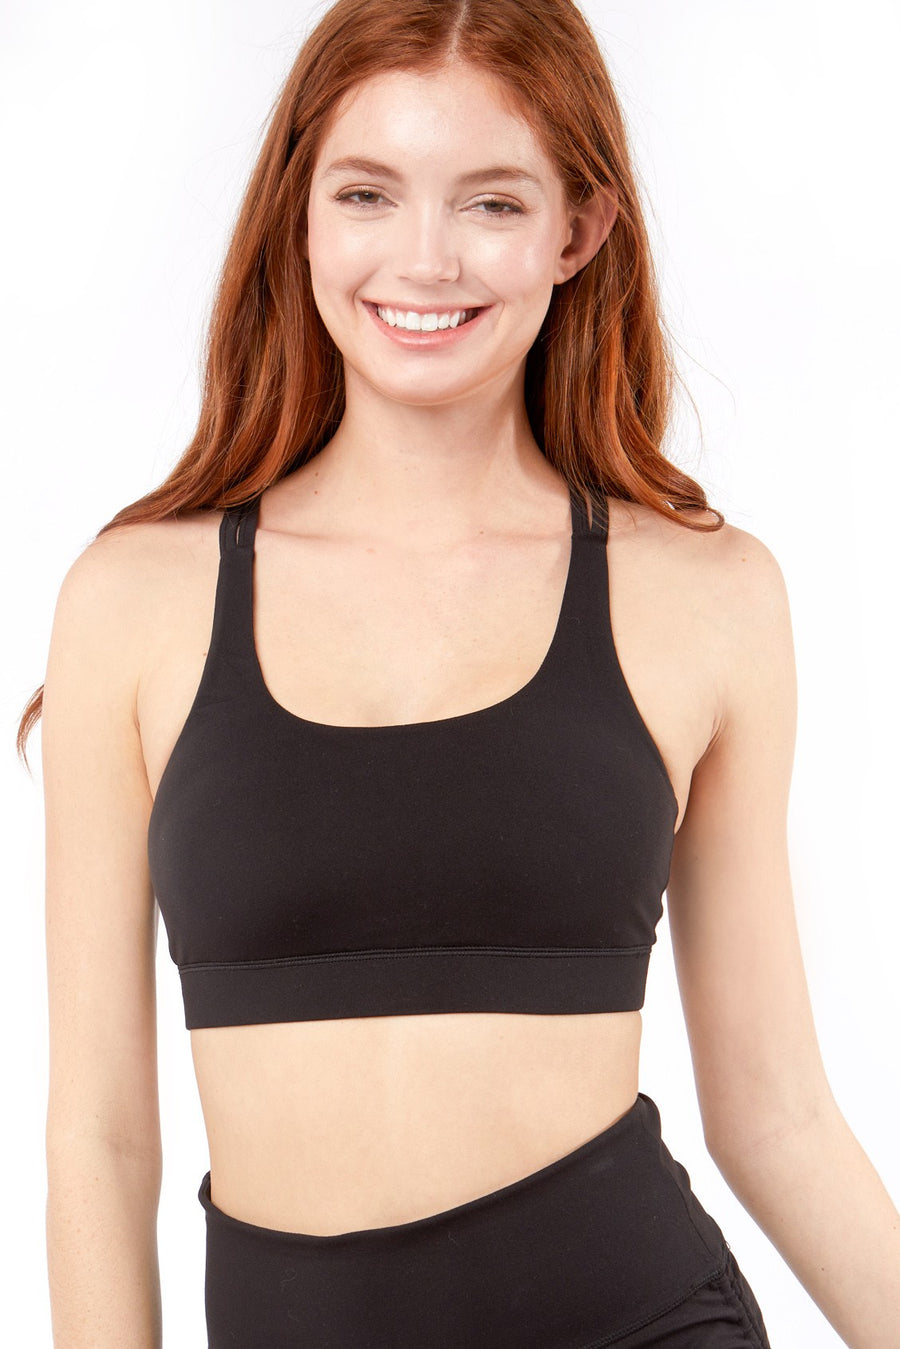  model is wearing a sports bra 